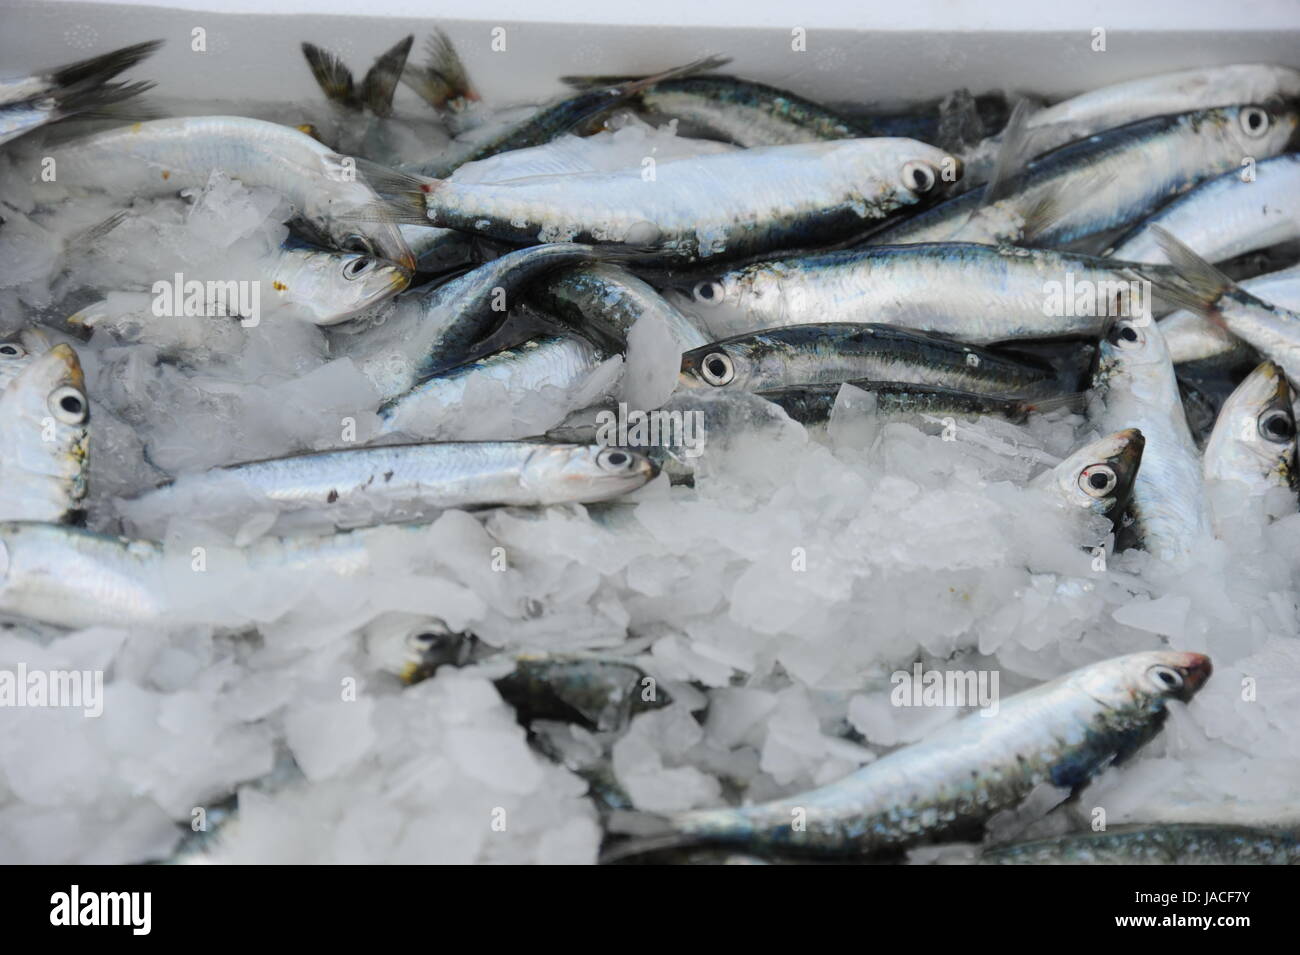 España - pescado fresco Foto de stock